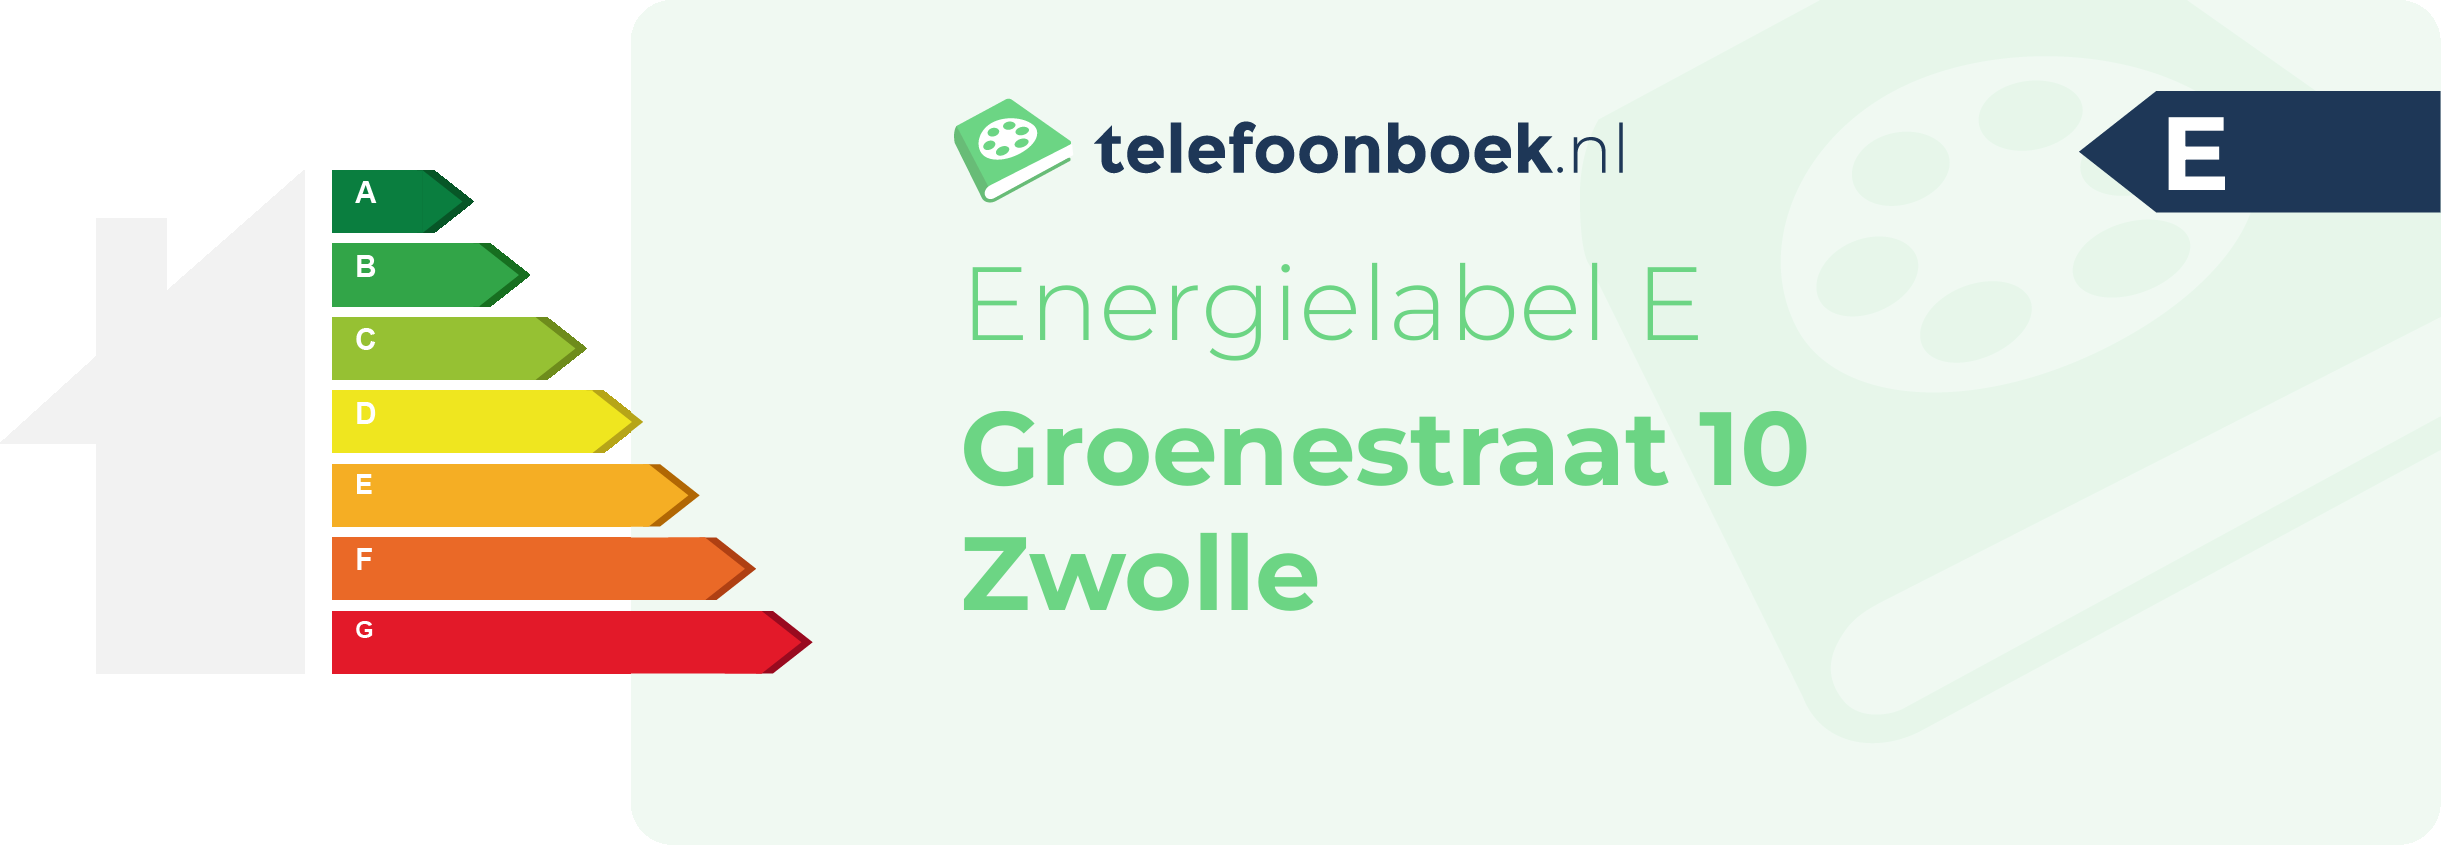 Energielabel Groenestraat 10 Zwolle